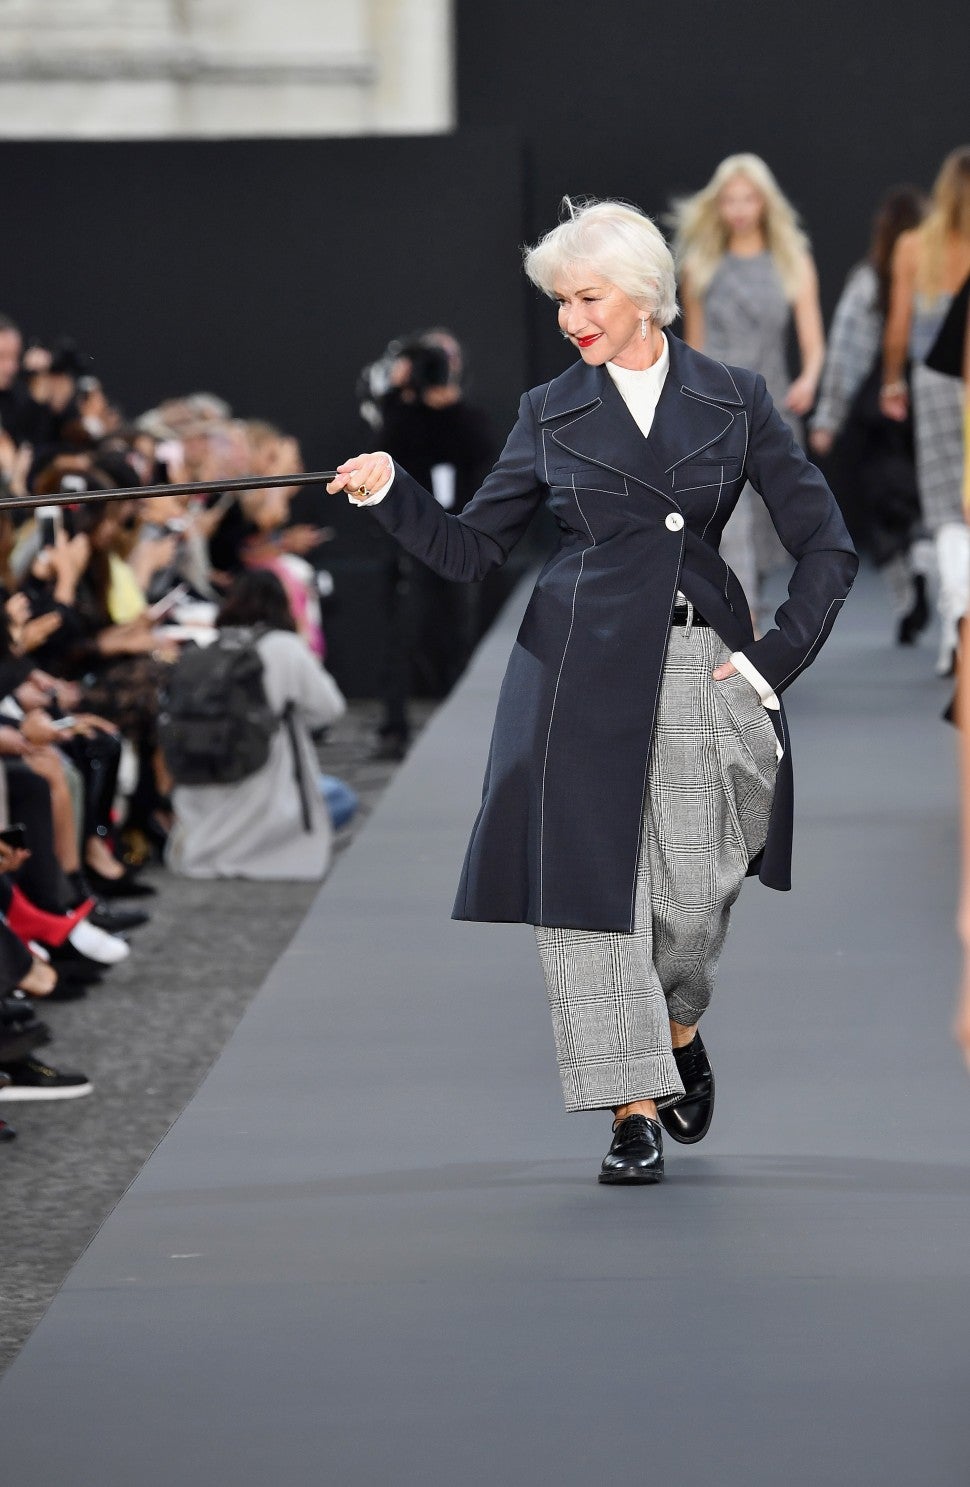 Helen Mirren at Paris Fashion Week Show 2017